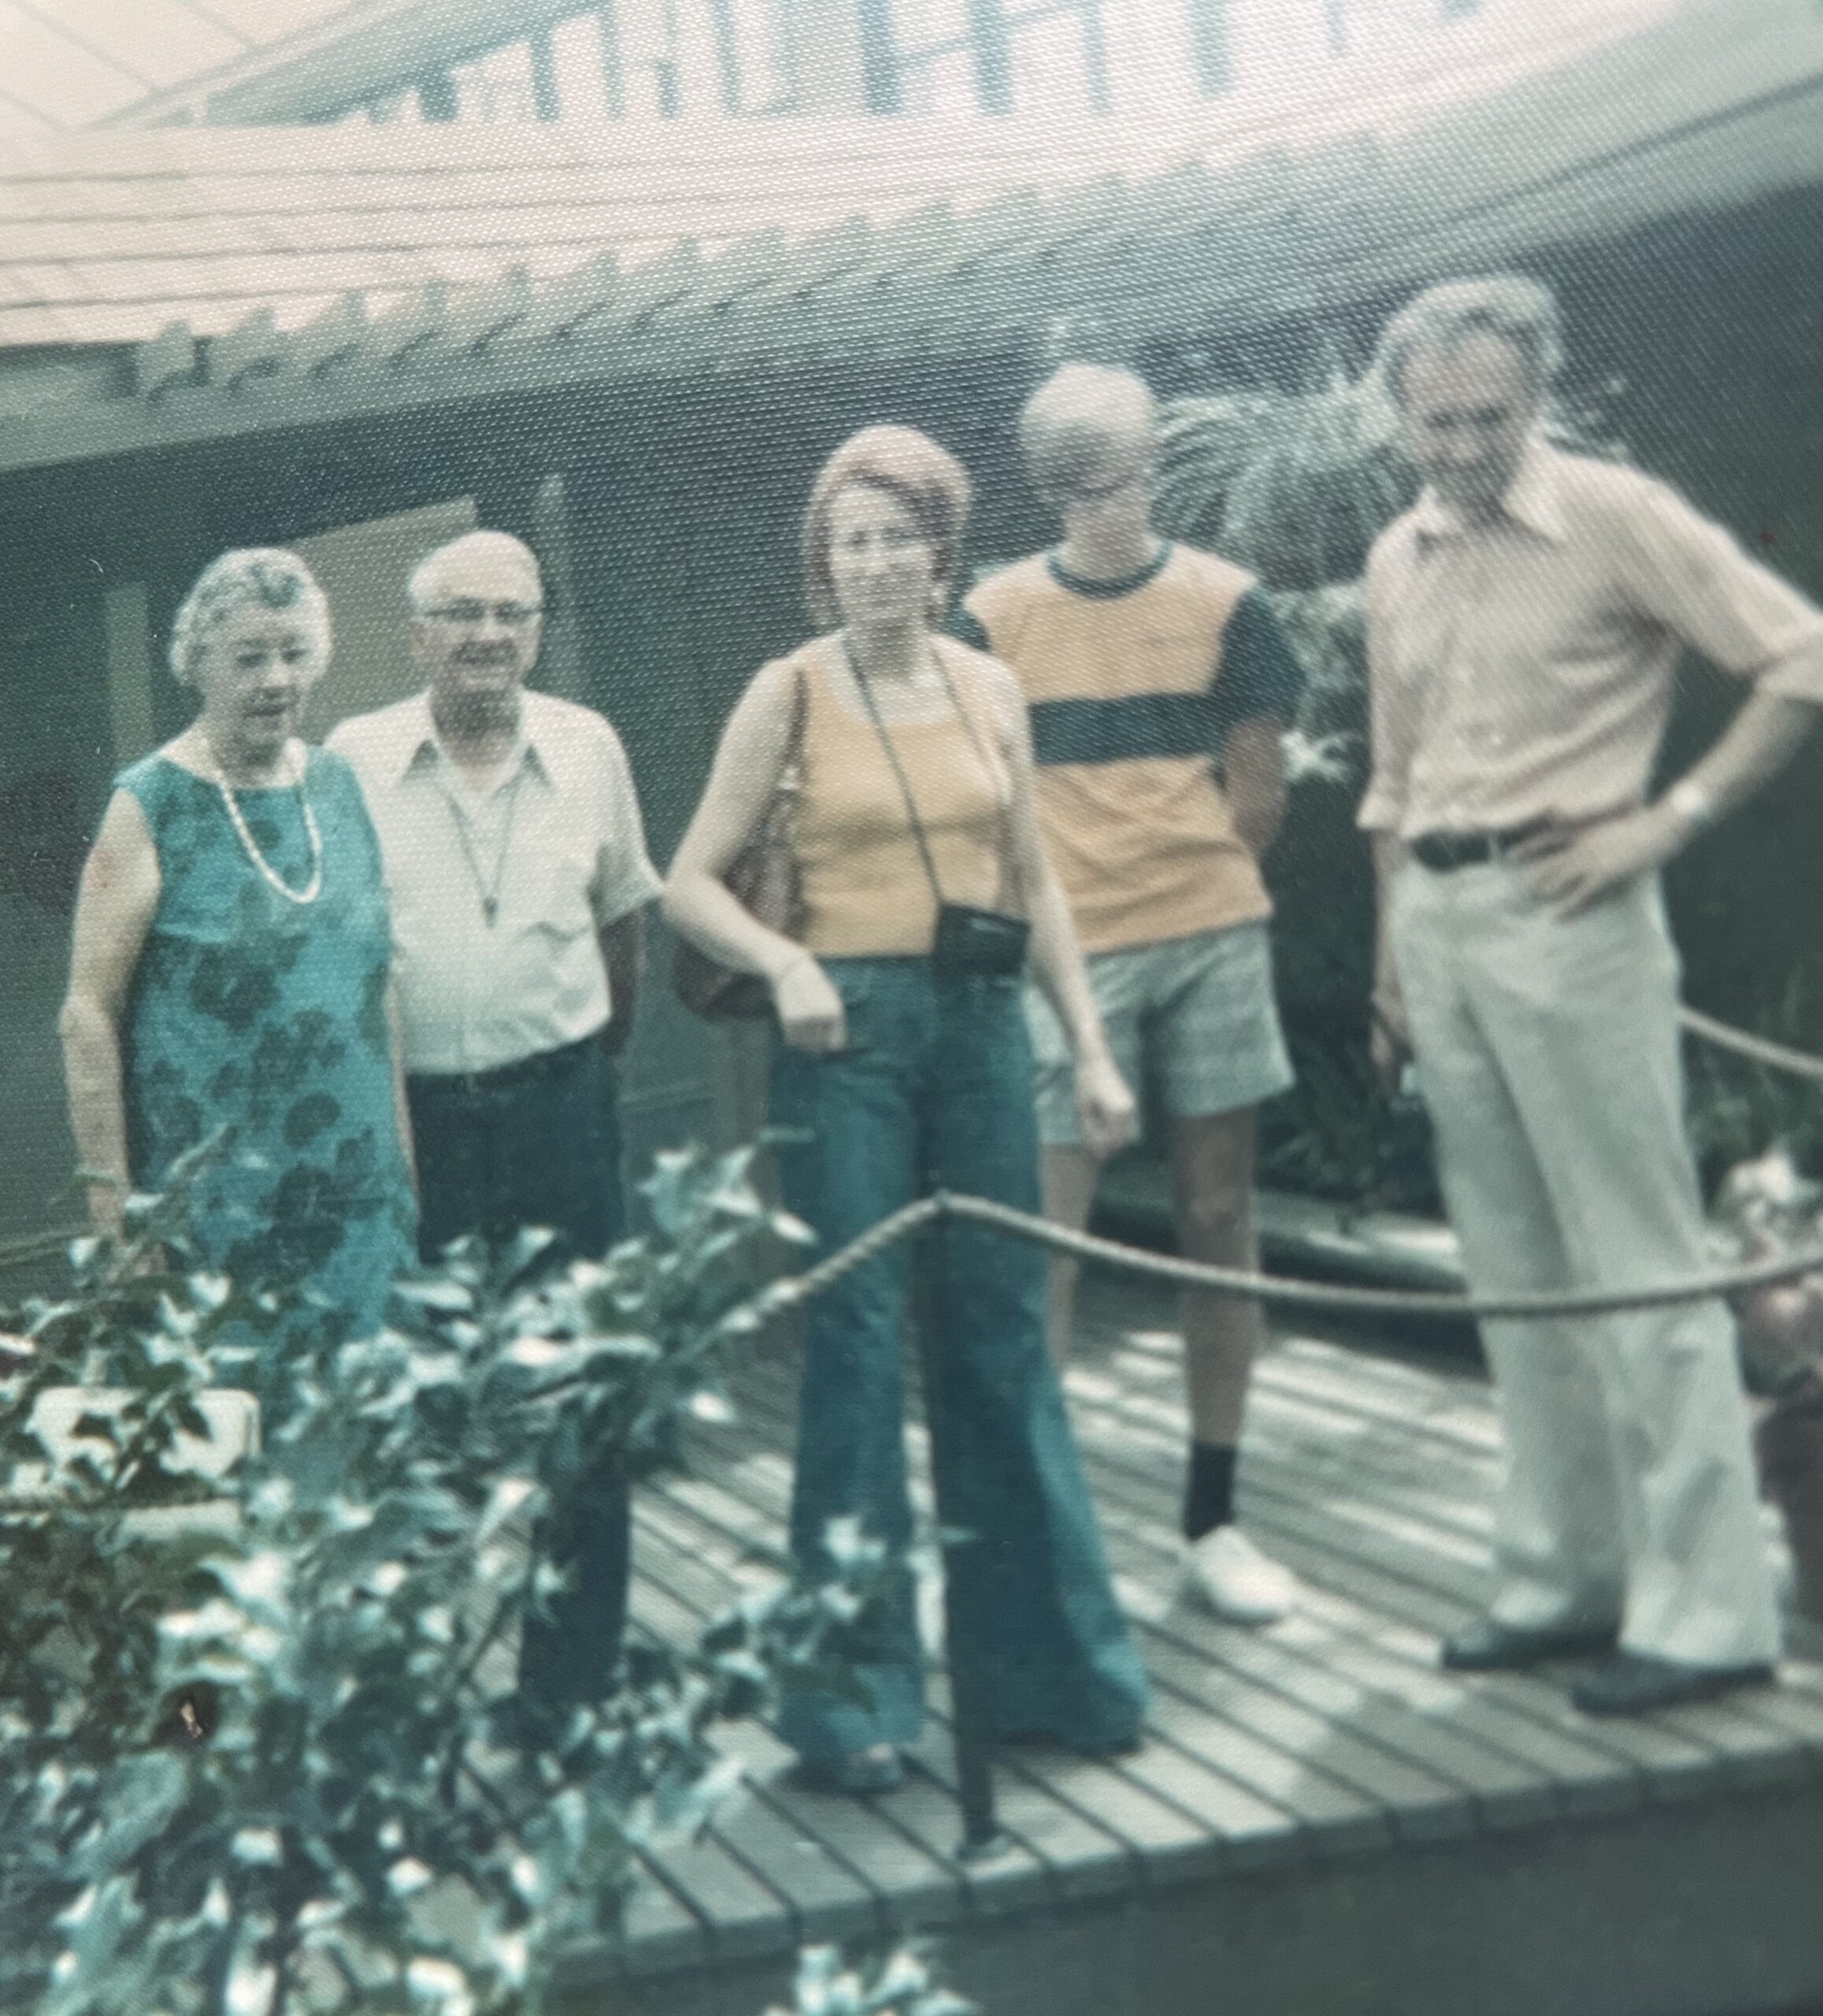 Première rencontre des deux familles, aux Etats-Unis en 1975. Norman Stevens et son épouse à gauche, et Ginette et Pierre (les parents de Ludovic Adeline) à droite avec Scott, le fils de Donald, entre eux. Photo améliorée par MyHeritage.